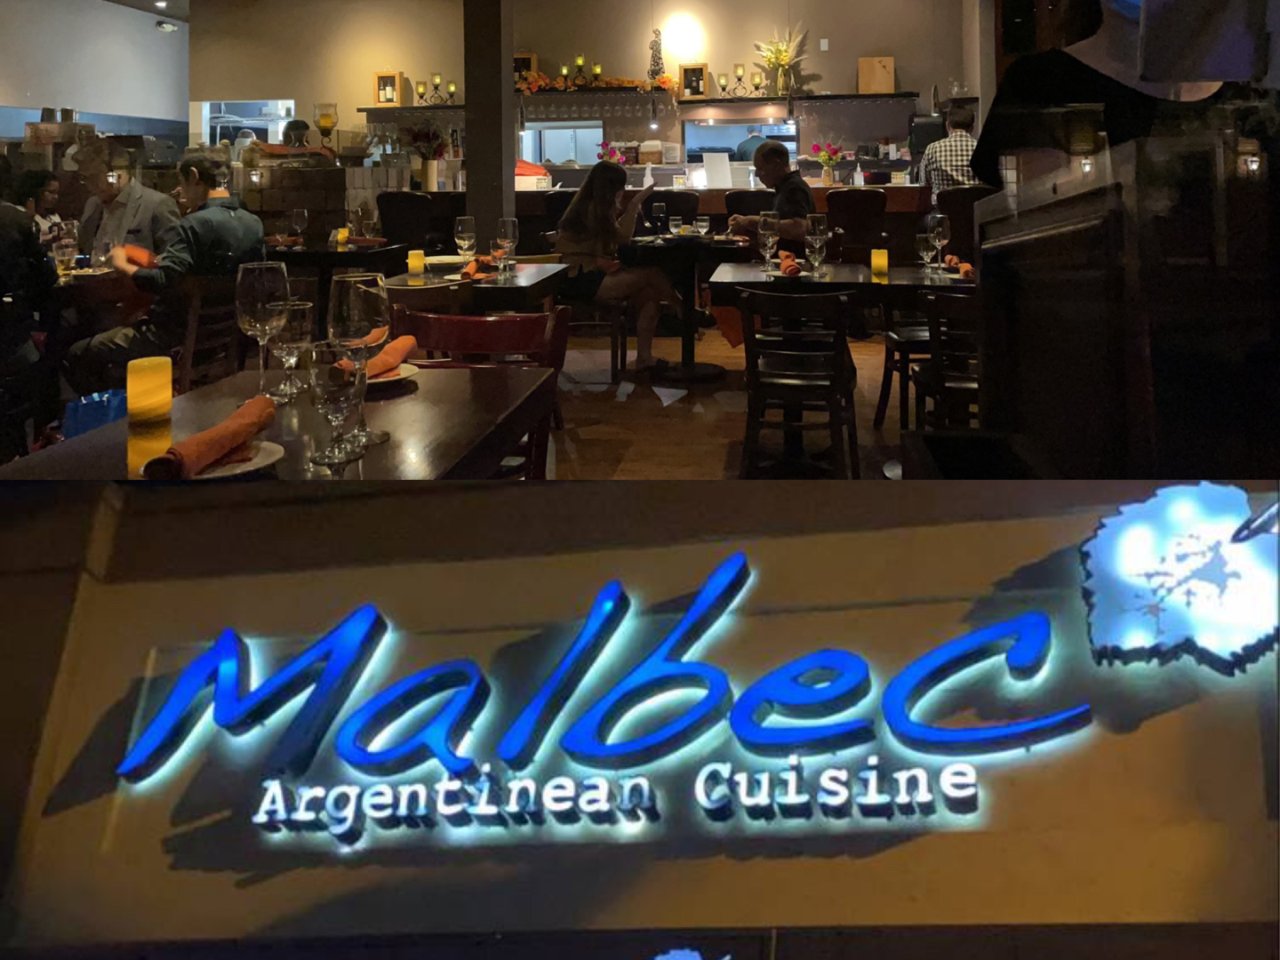 Malbec Argentinean Cuisine - Pasadena